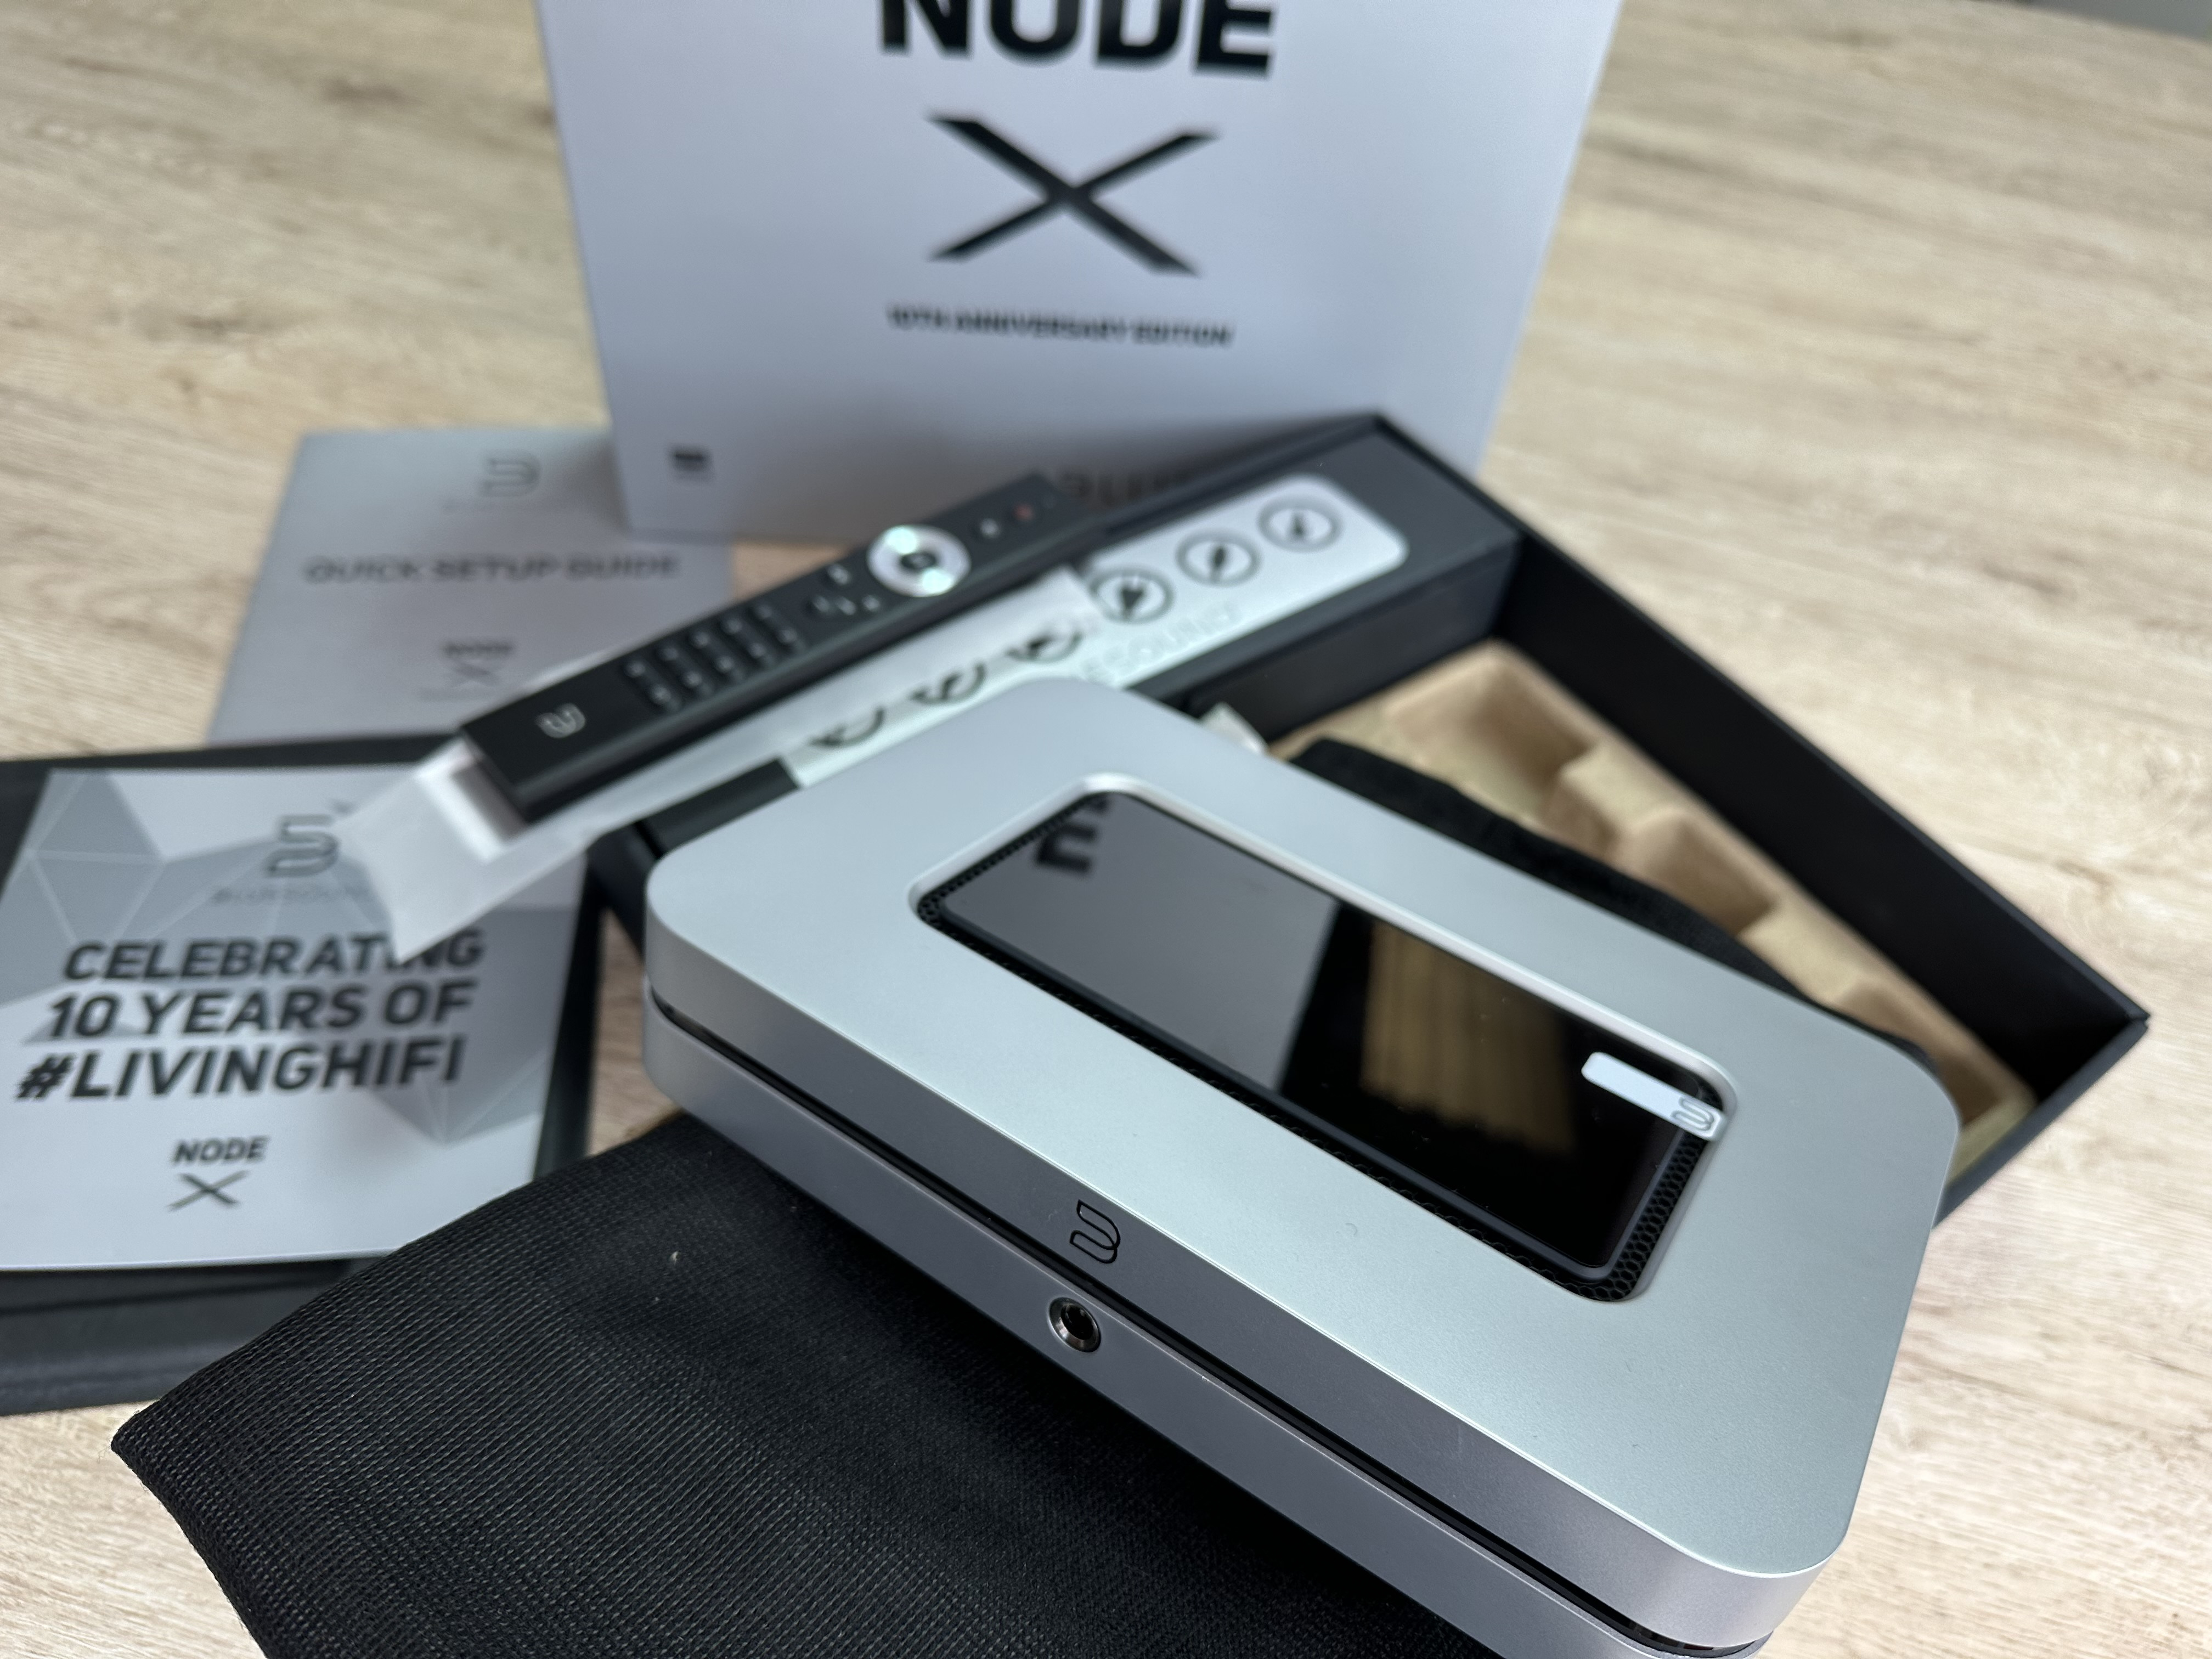 Bluesound lanza NODE X, el streamer multi-room inalámbrico premium